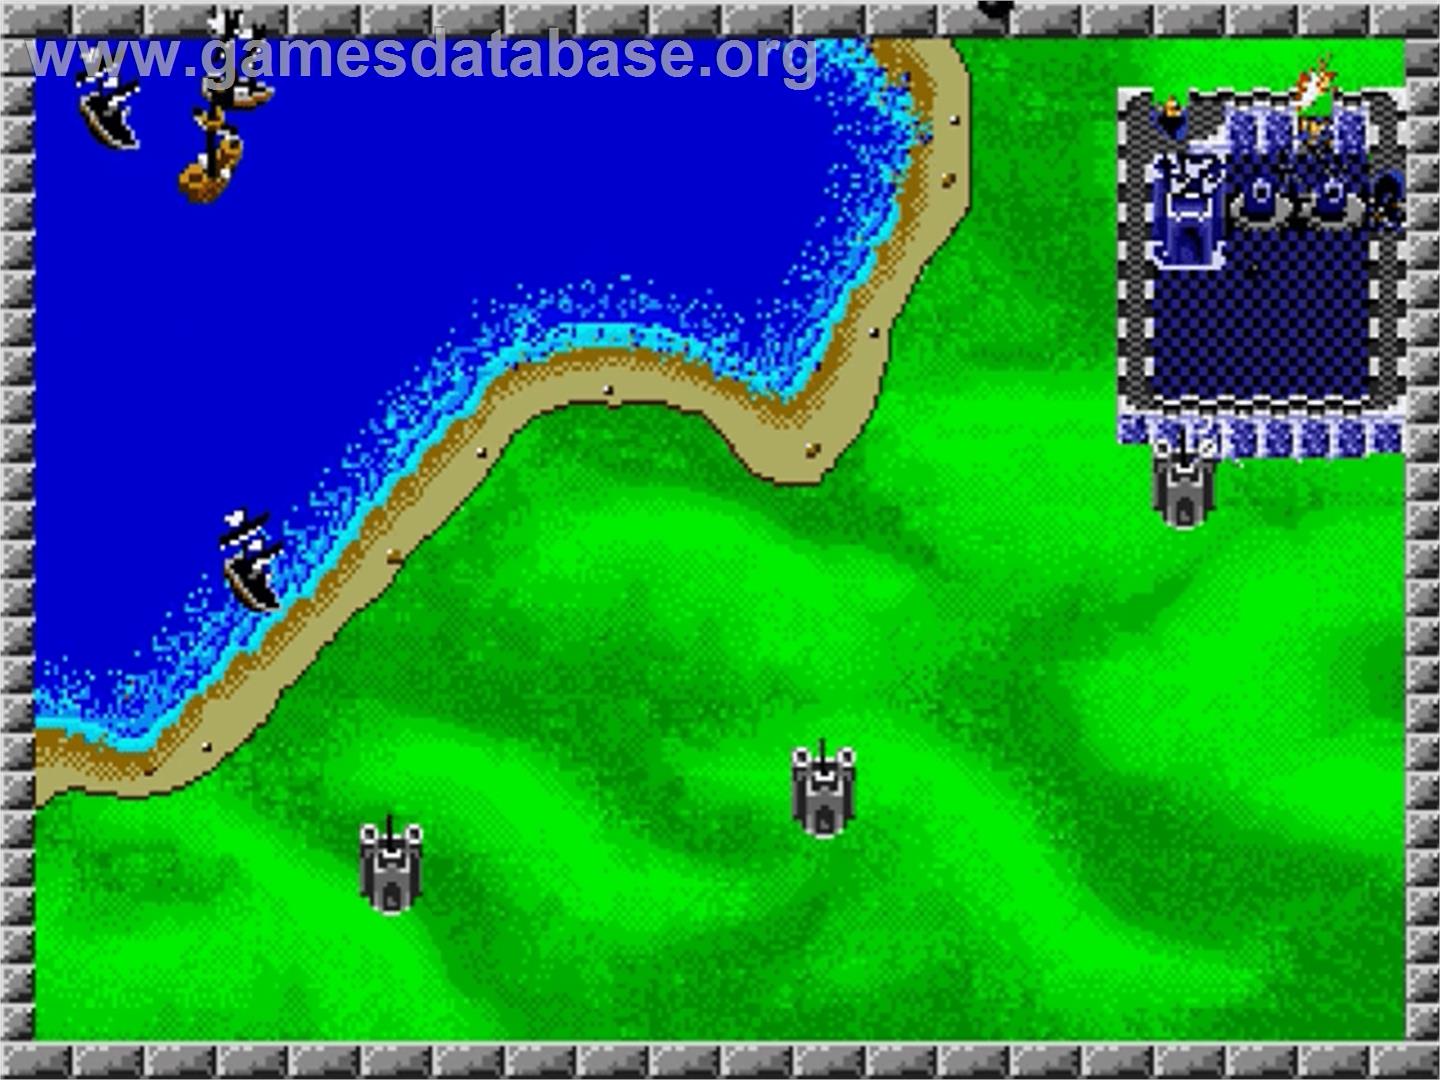 Rampart - Sega Genesis - Artwork - In Game